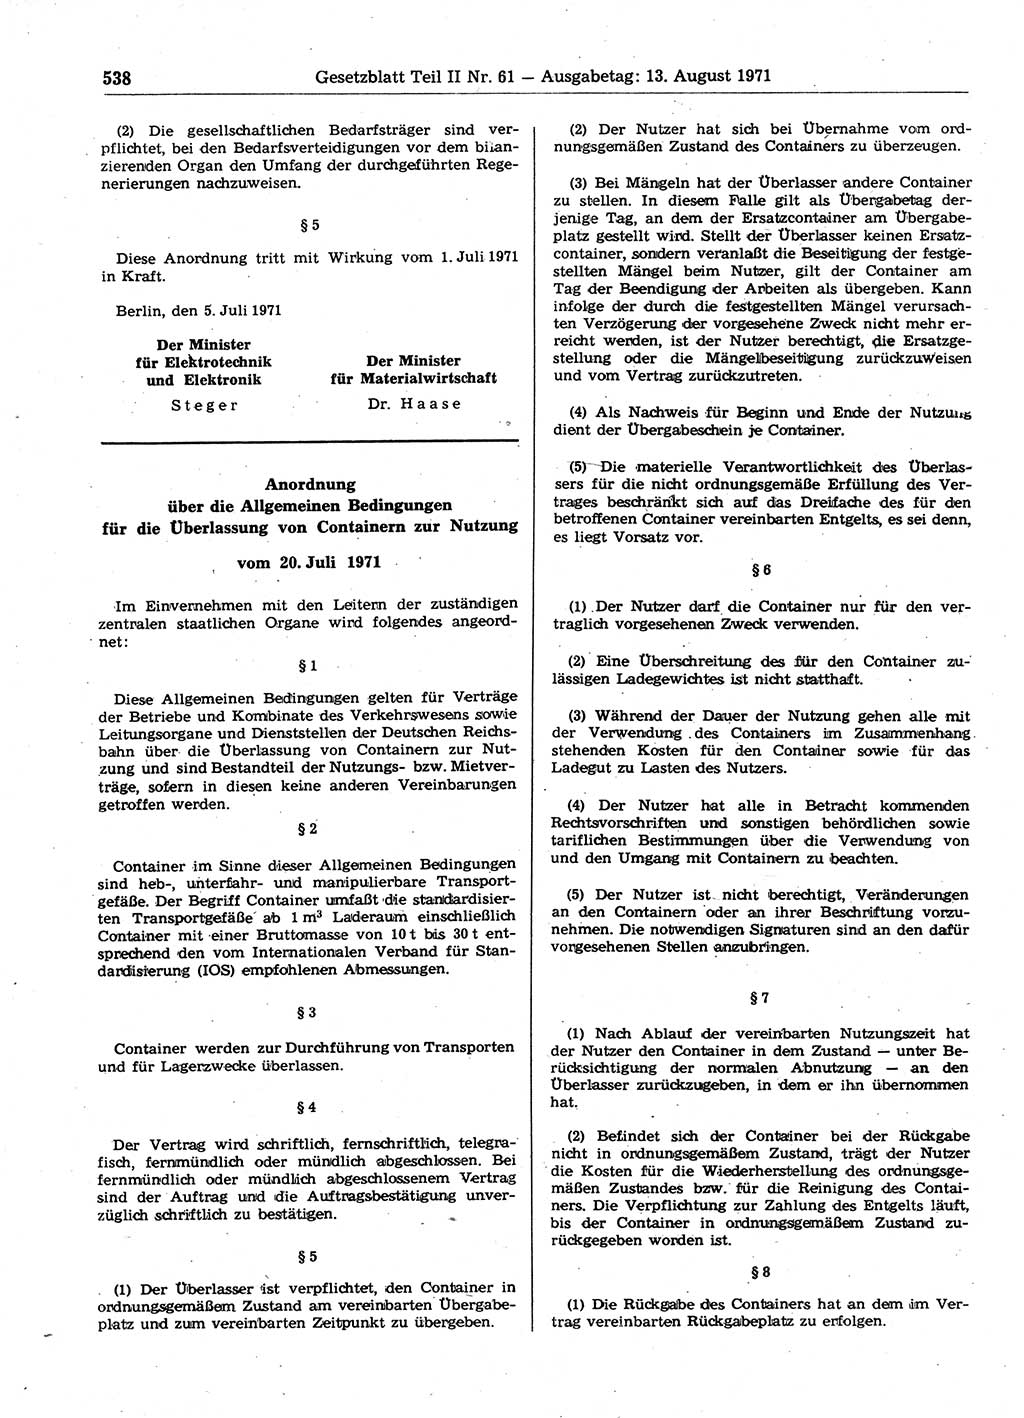 Gesetzblatt (GBl.) der Deutschen Demokratischen Republik (DDR) Teil ⅠⅠ 1971, Seite 538 (GBl. DDR ⅠⅠ 1971, S. 538)